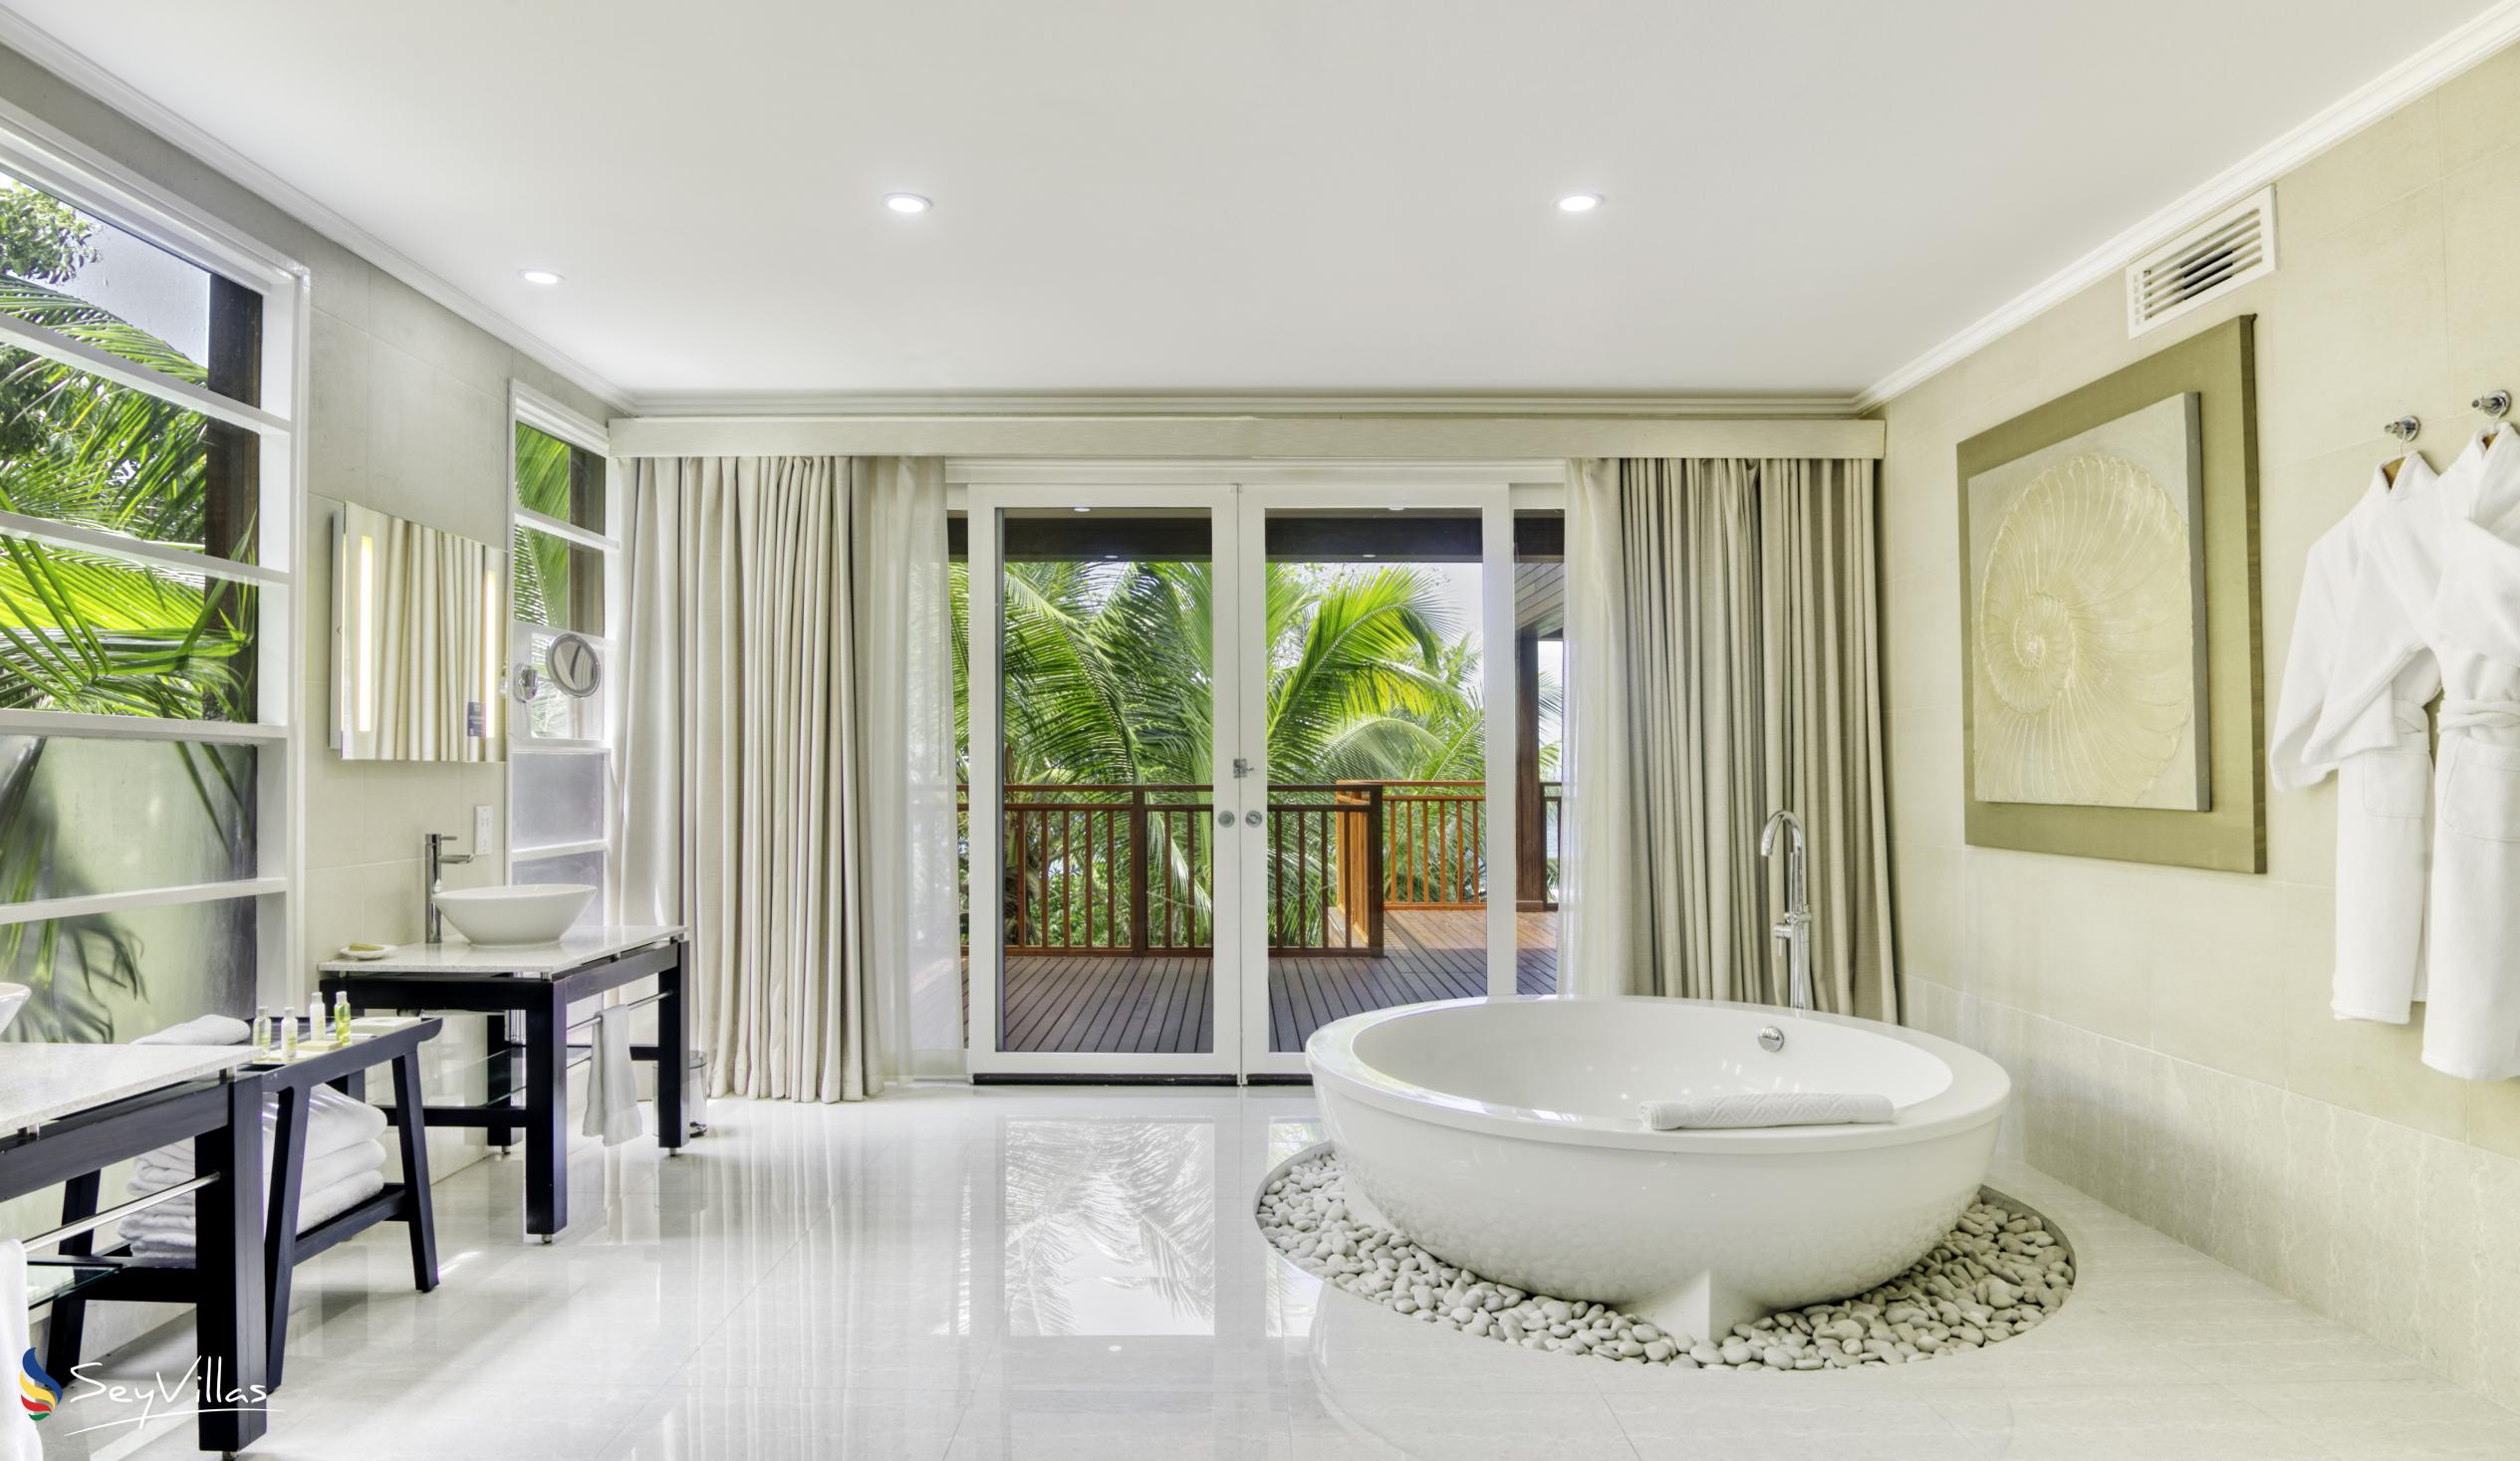 Foto 80: Hilton Seychelles Labriz Resort & Spa - Two Bedroom Silhouette Estate - Silhouette Island (Seychellen)